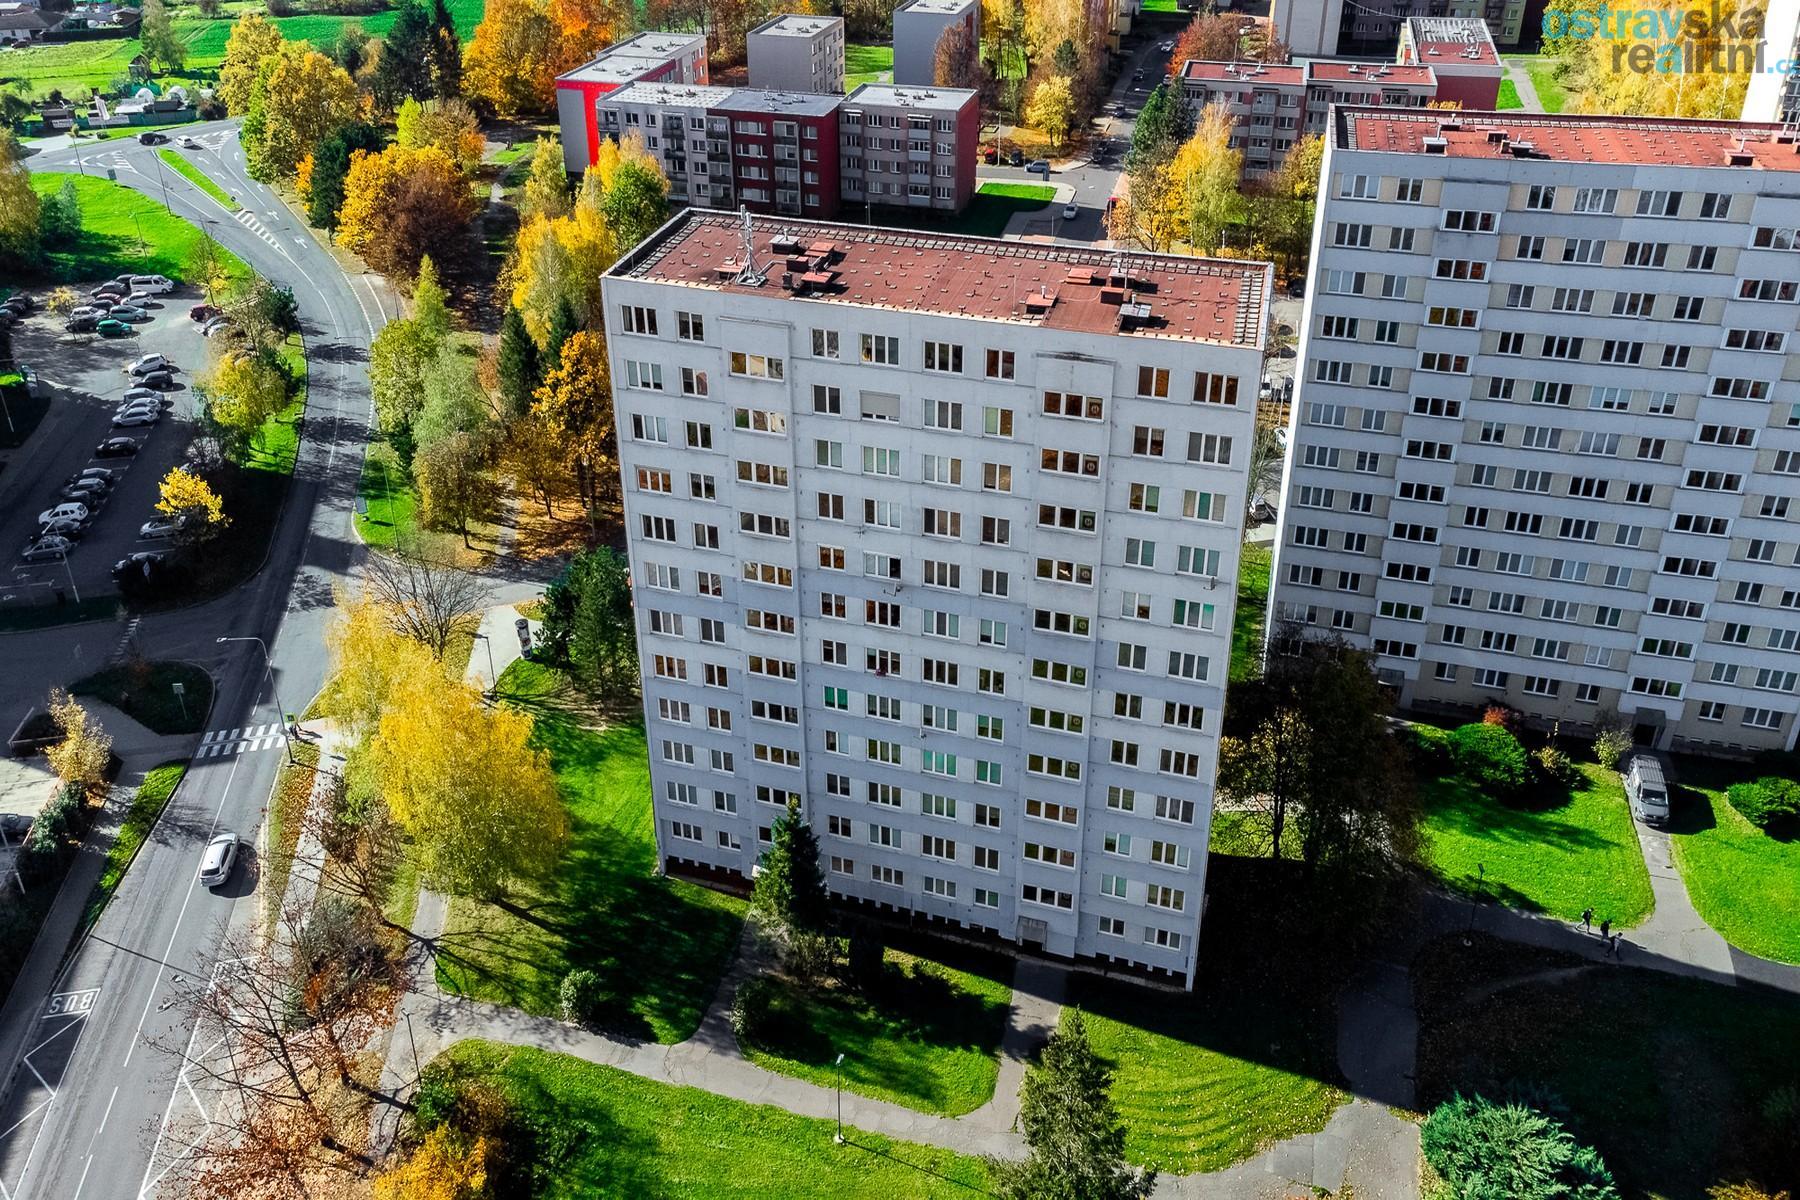 Prodej, byt 1+1 s nádherným výhledem, Ostrava - Poruba, ul. Otakara Jeremiáše, 28 m2